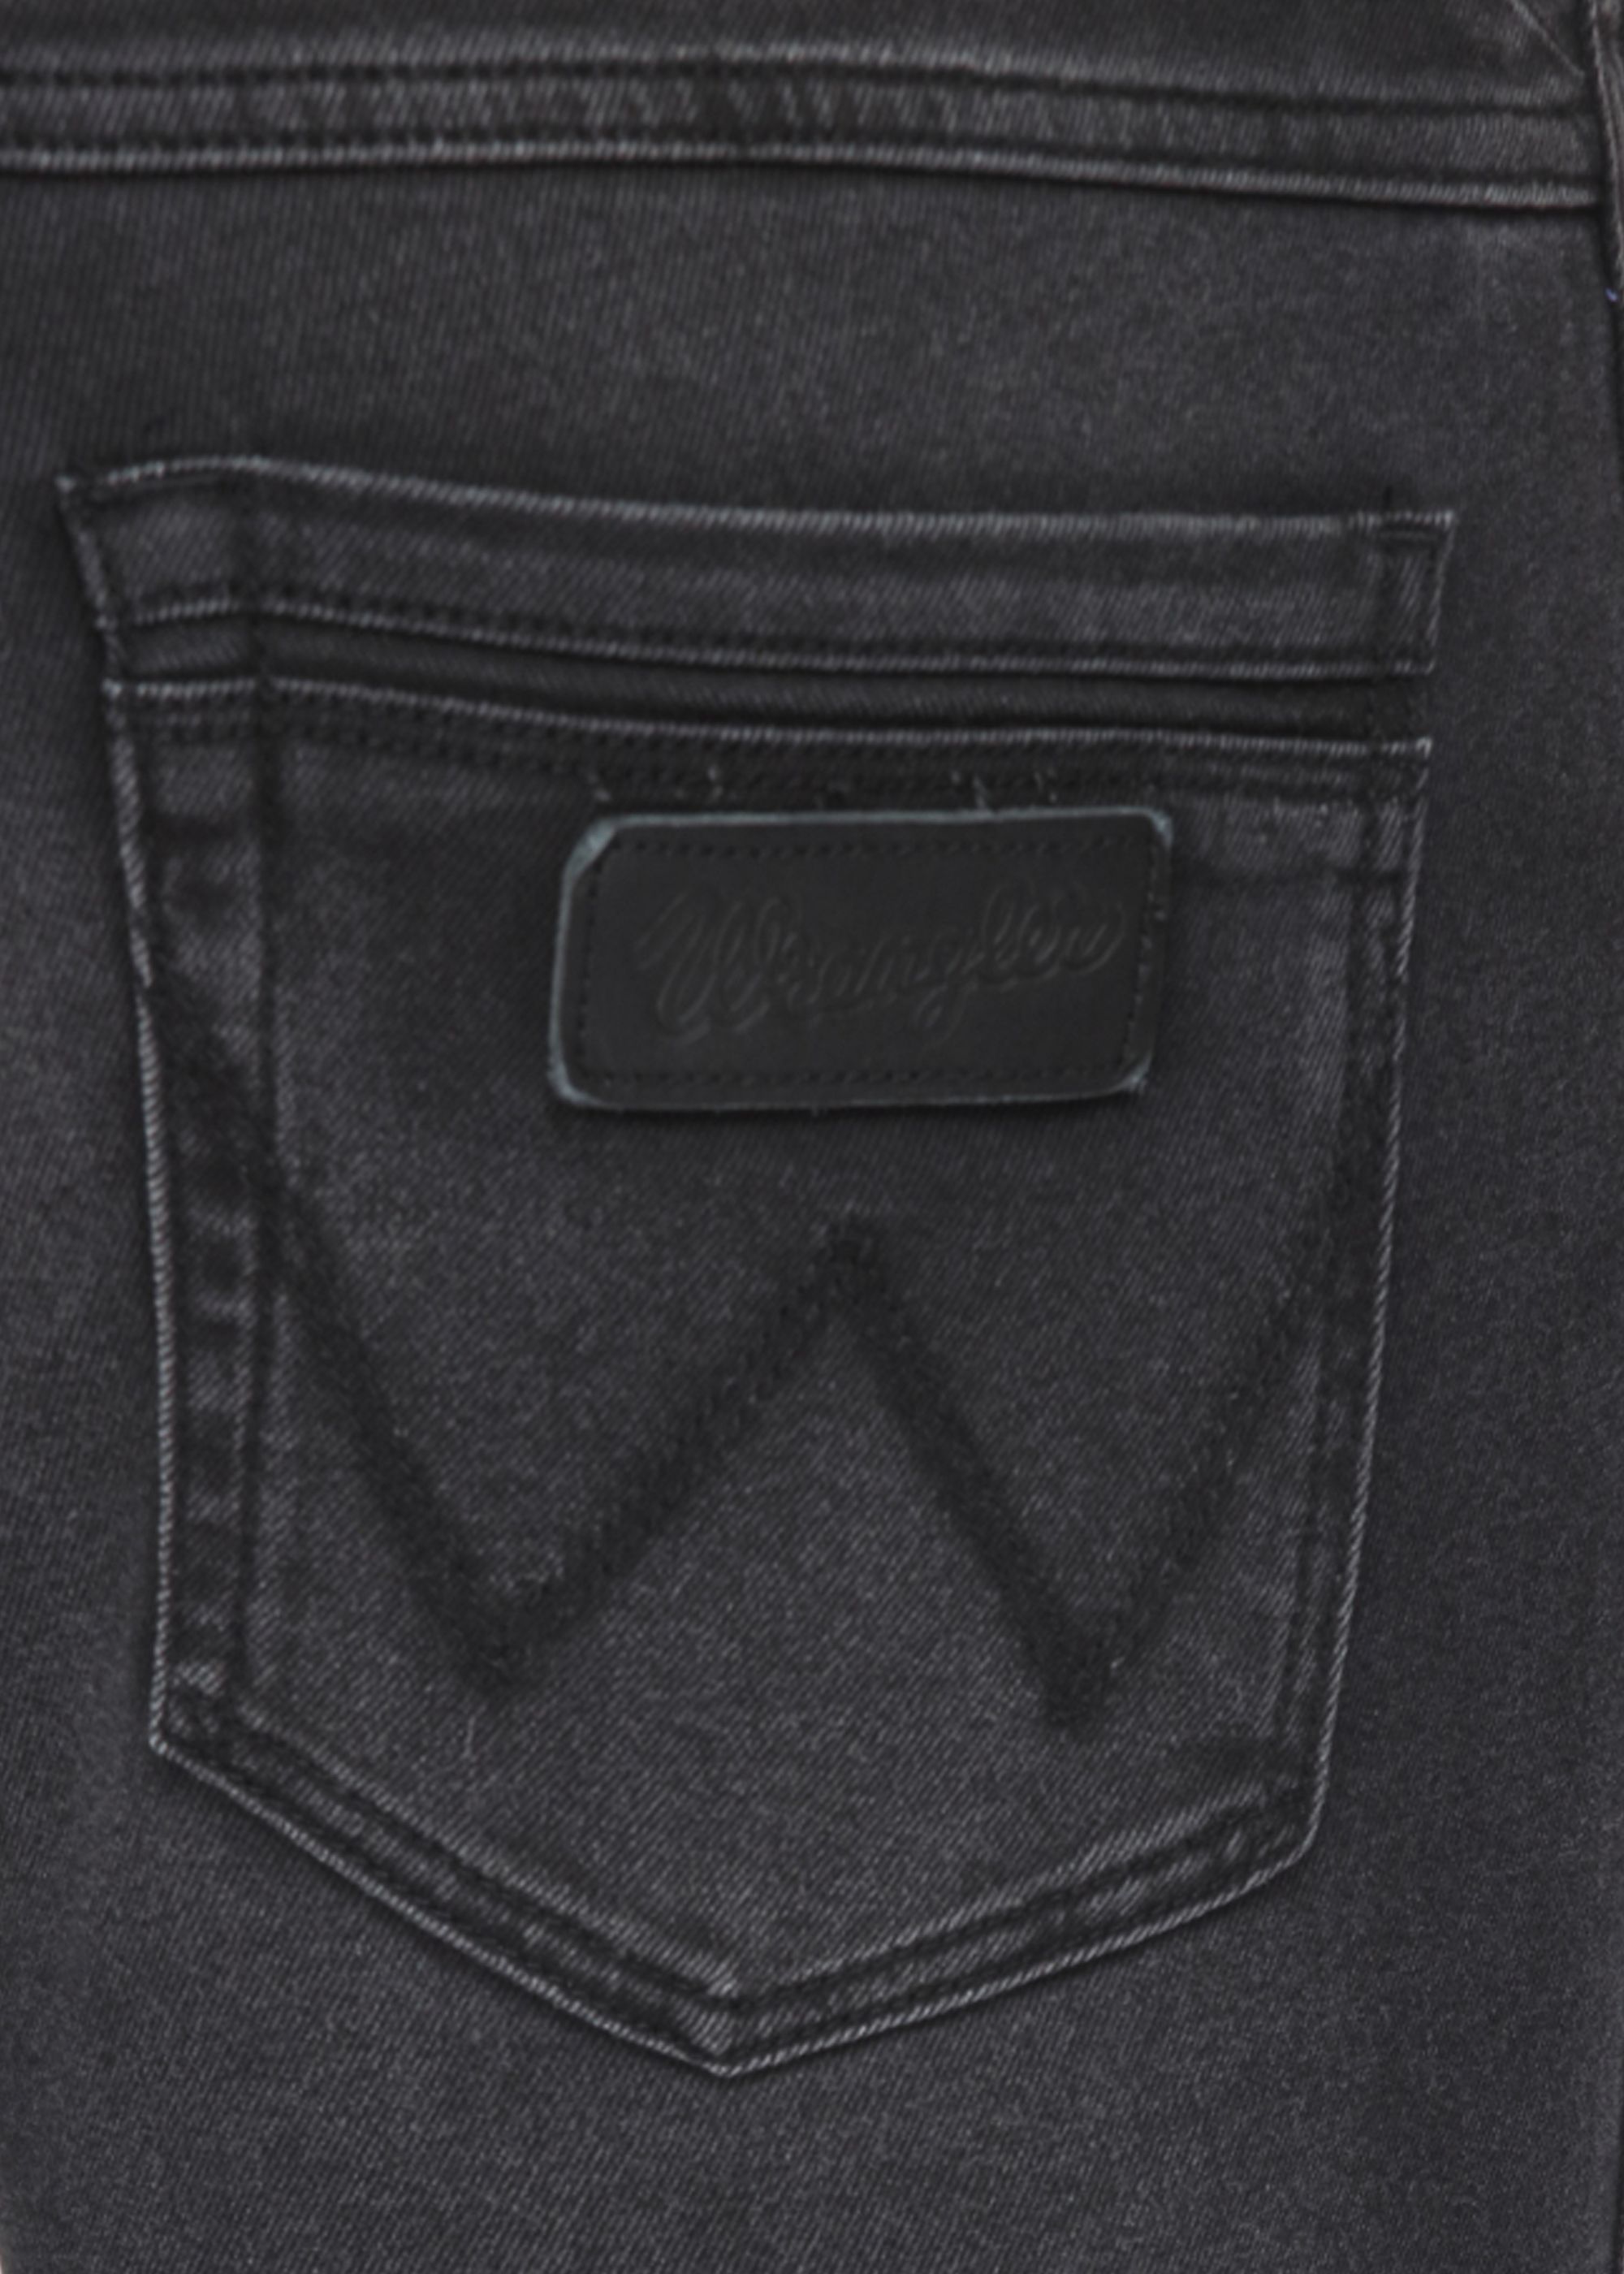 Wrangler Black Regular Fit Jeans - Buy Wrangler Black Regular Fit Jeans ...